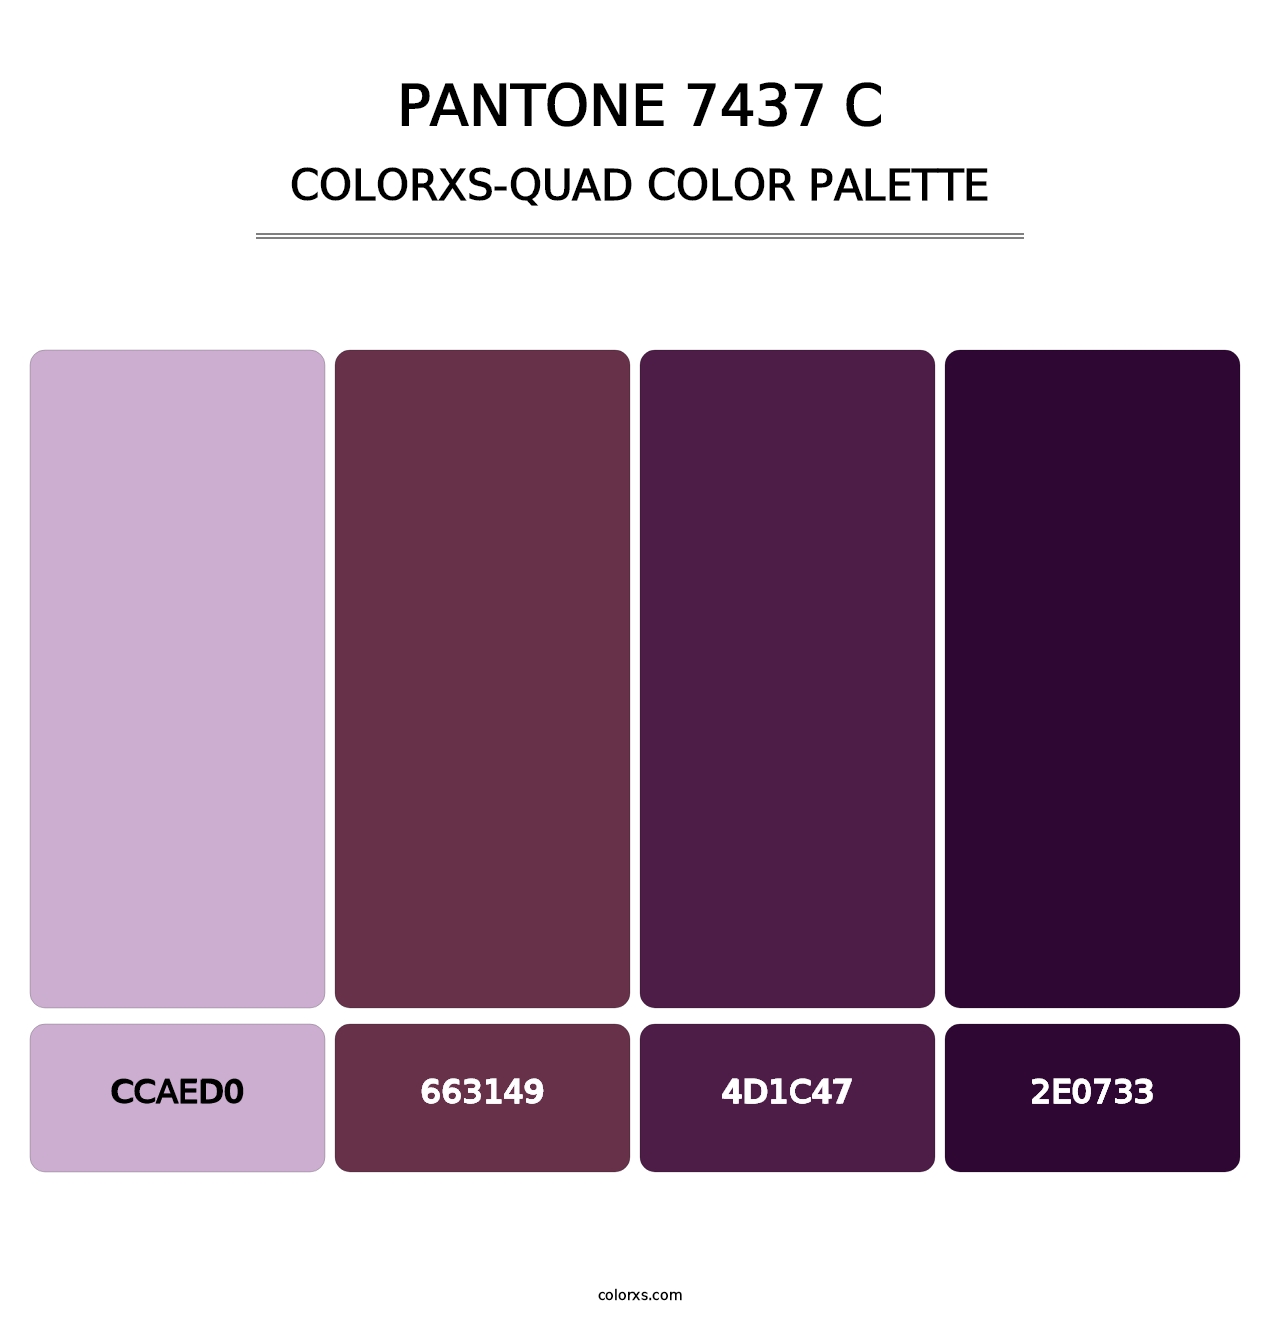 PANTONE 7437 C - Colorxs Quad Palette